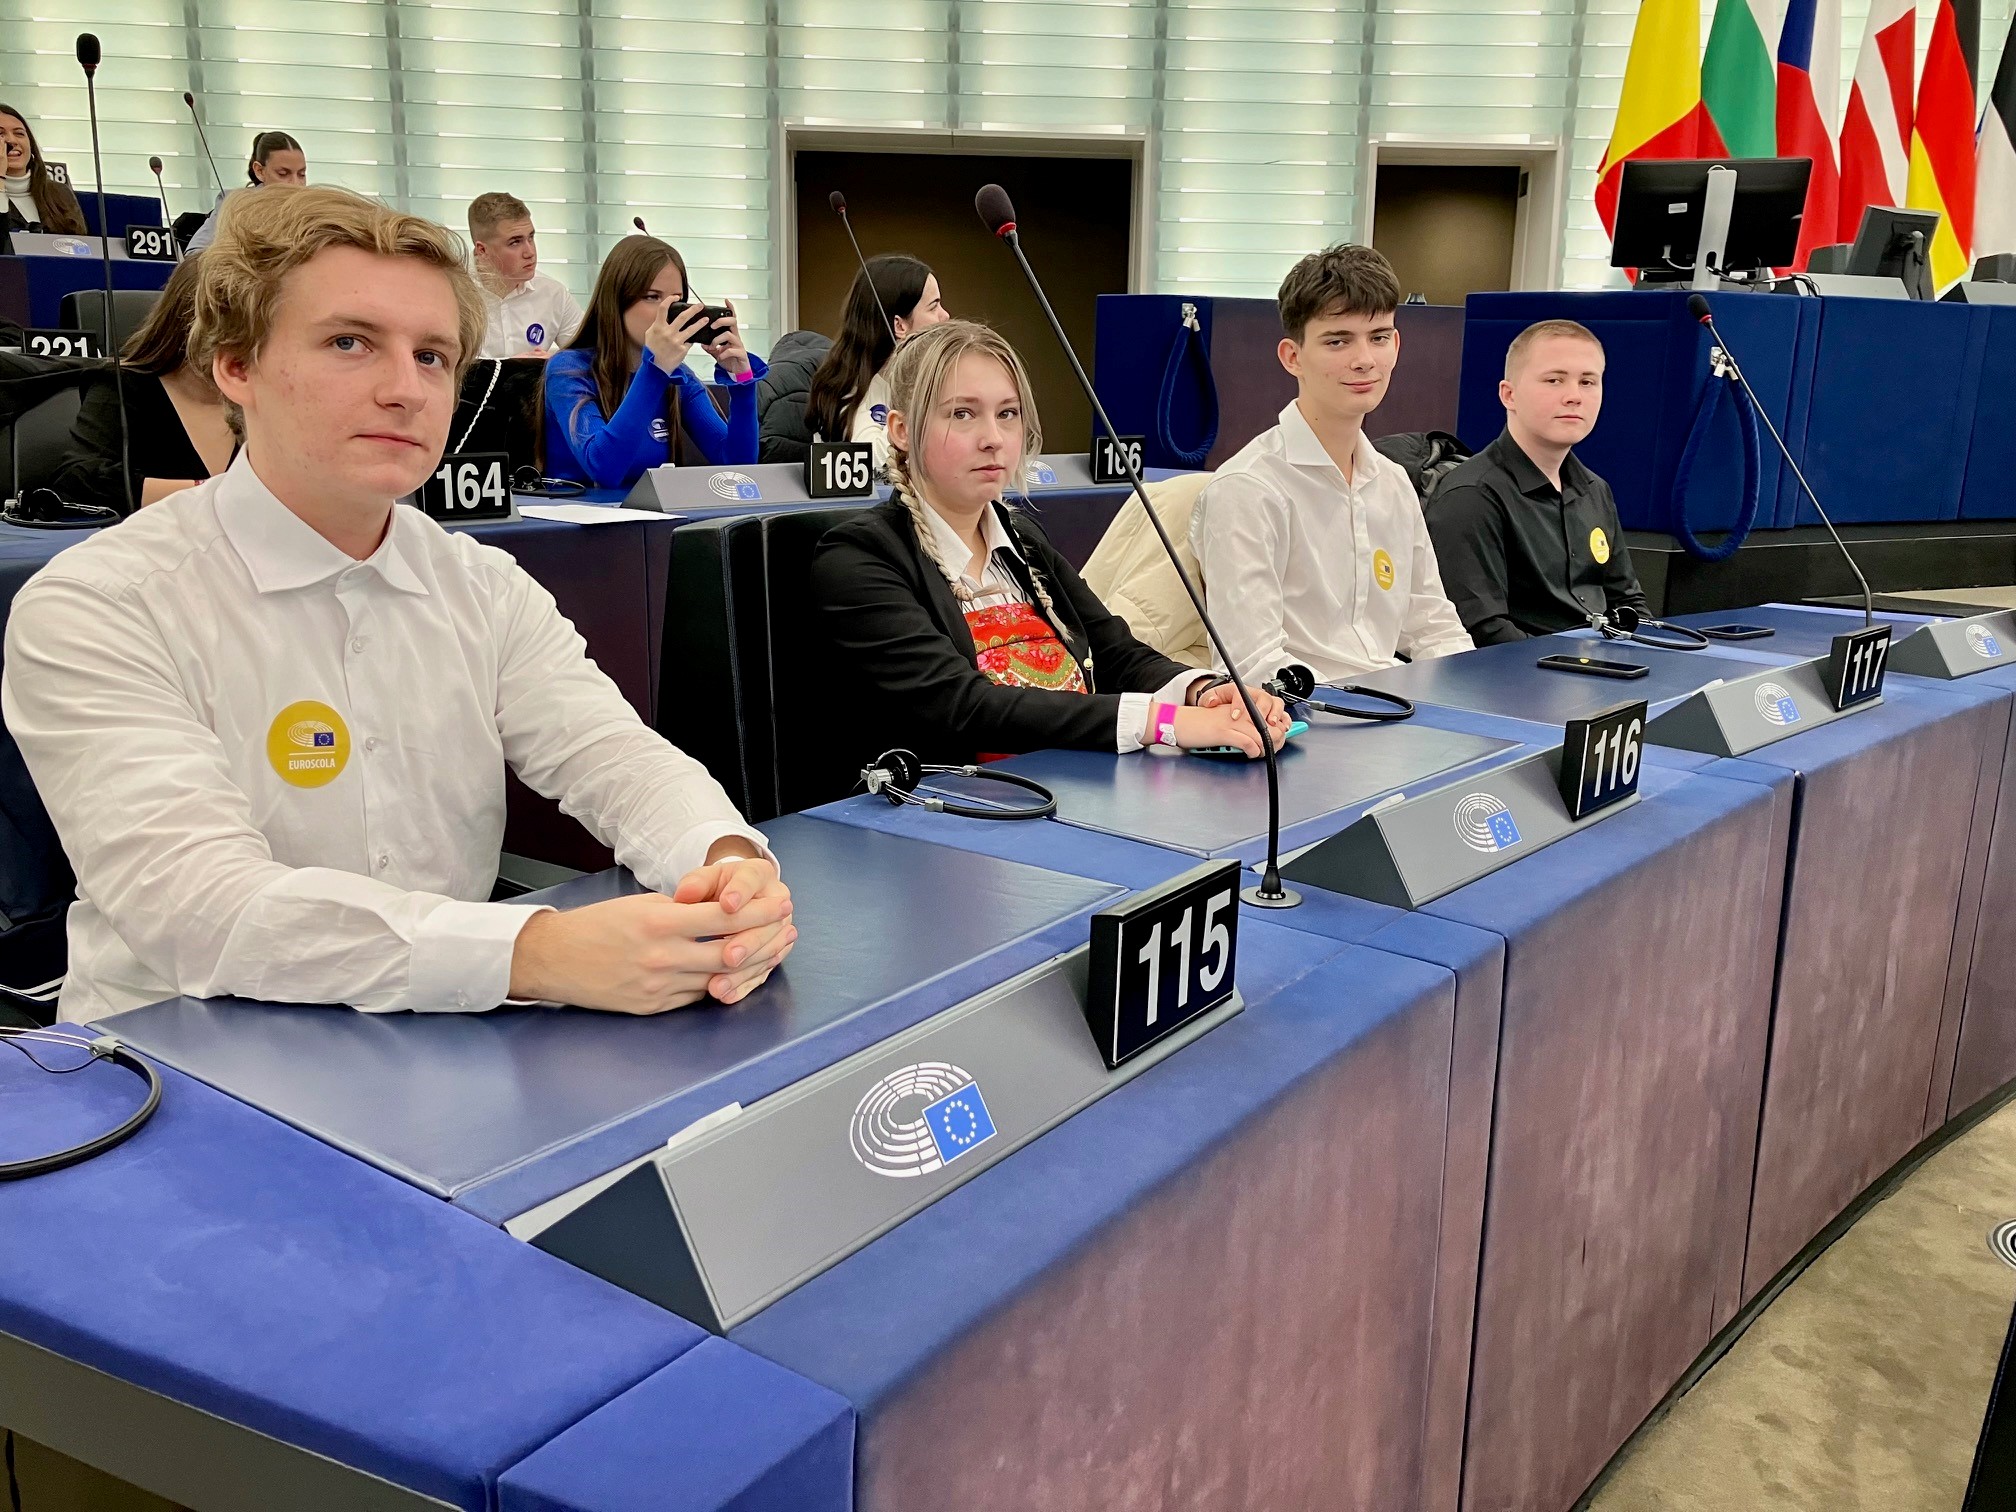 Uczniowie II LO z BJN na jeden dzień zostali posłami do Parlamentu Europejskiego - udział w sesji EUROSCOLA